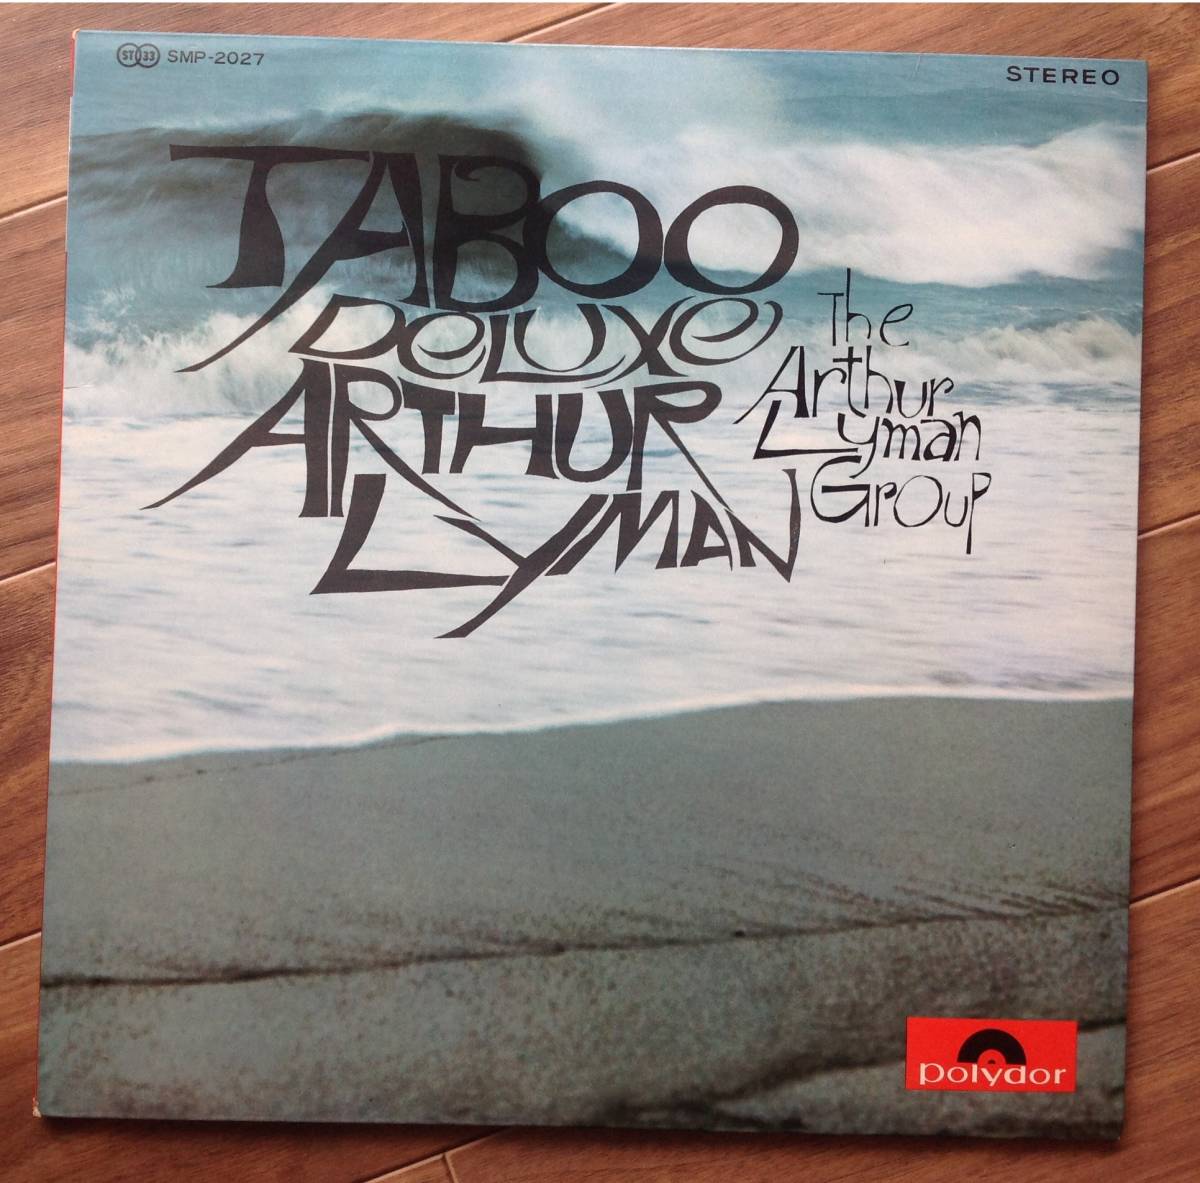 Arthur Lyman Group - Taboo Deluxe _画像1